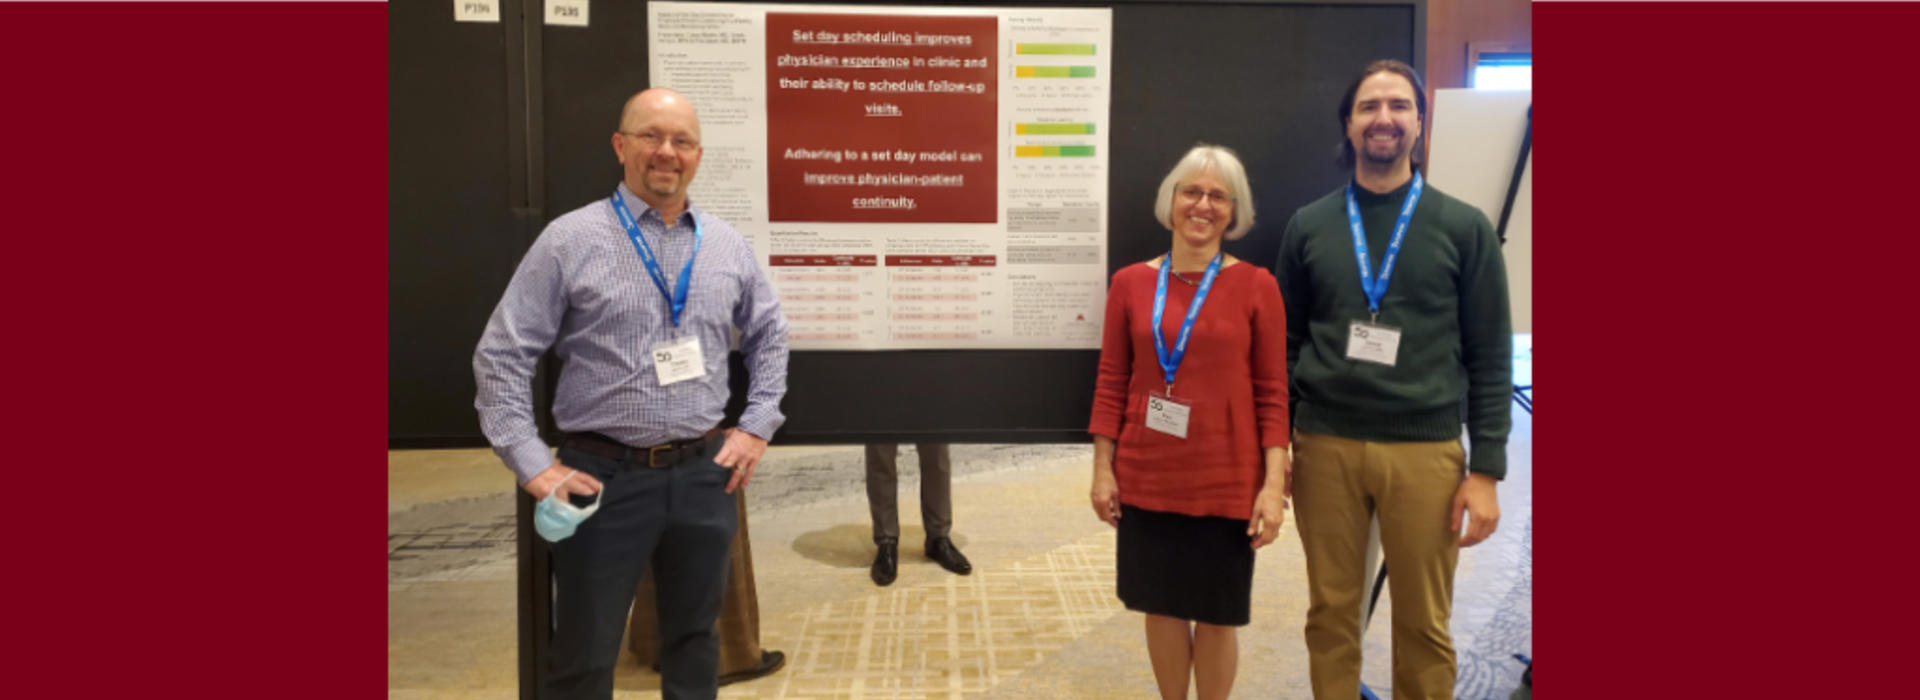 Drs. Casey Martin and Pita Adam with Derek Hersch with their presentation poster